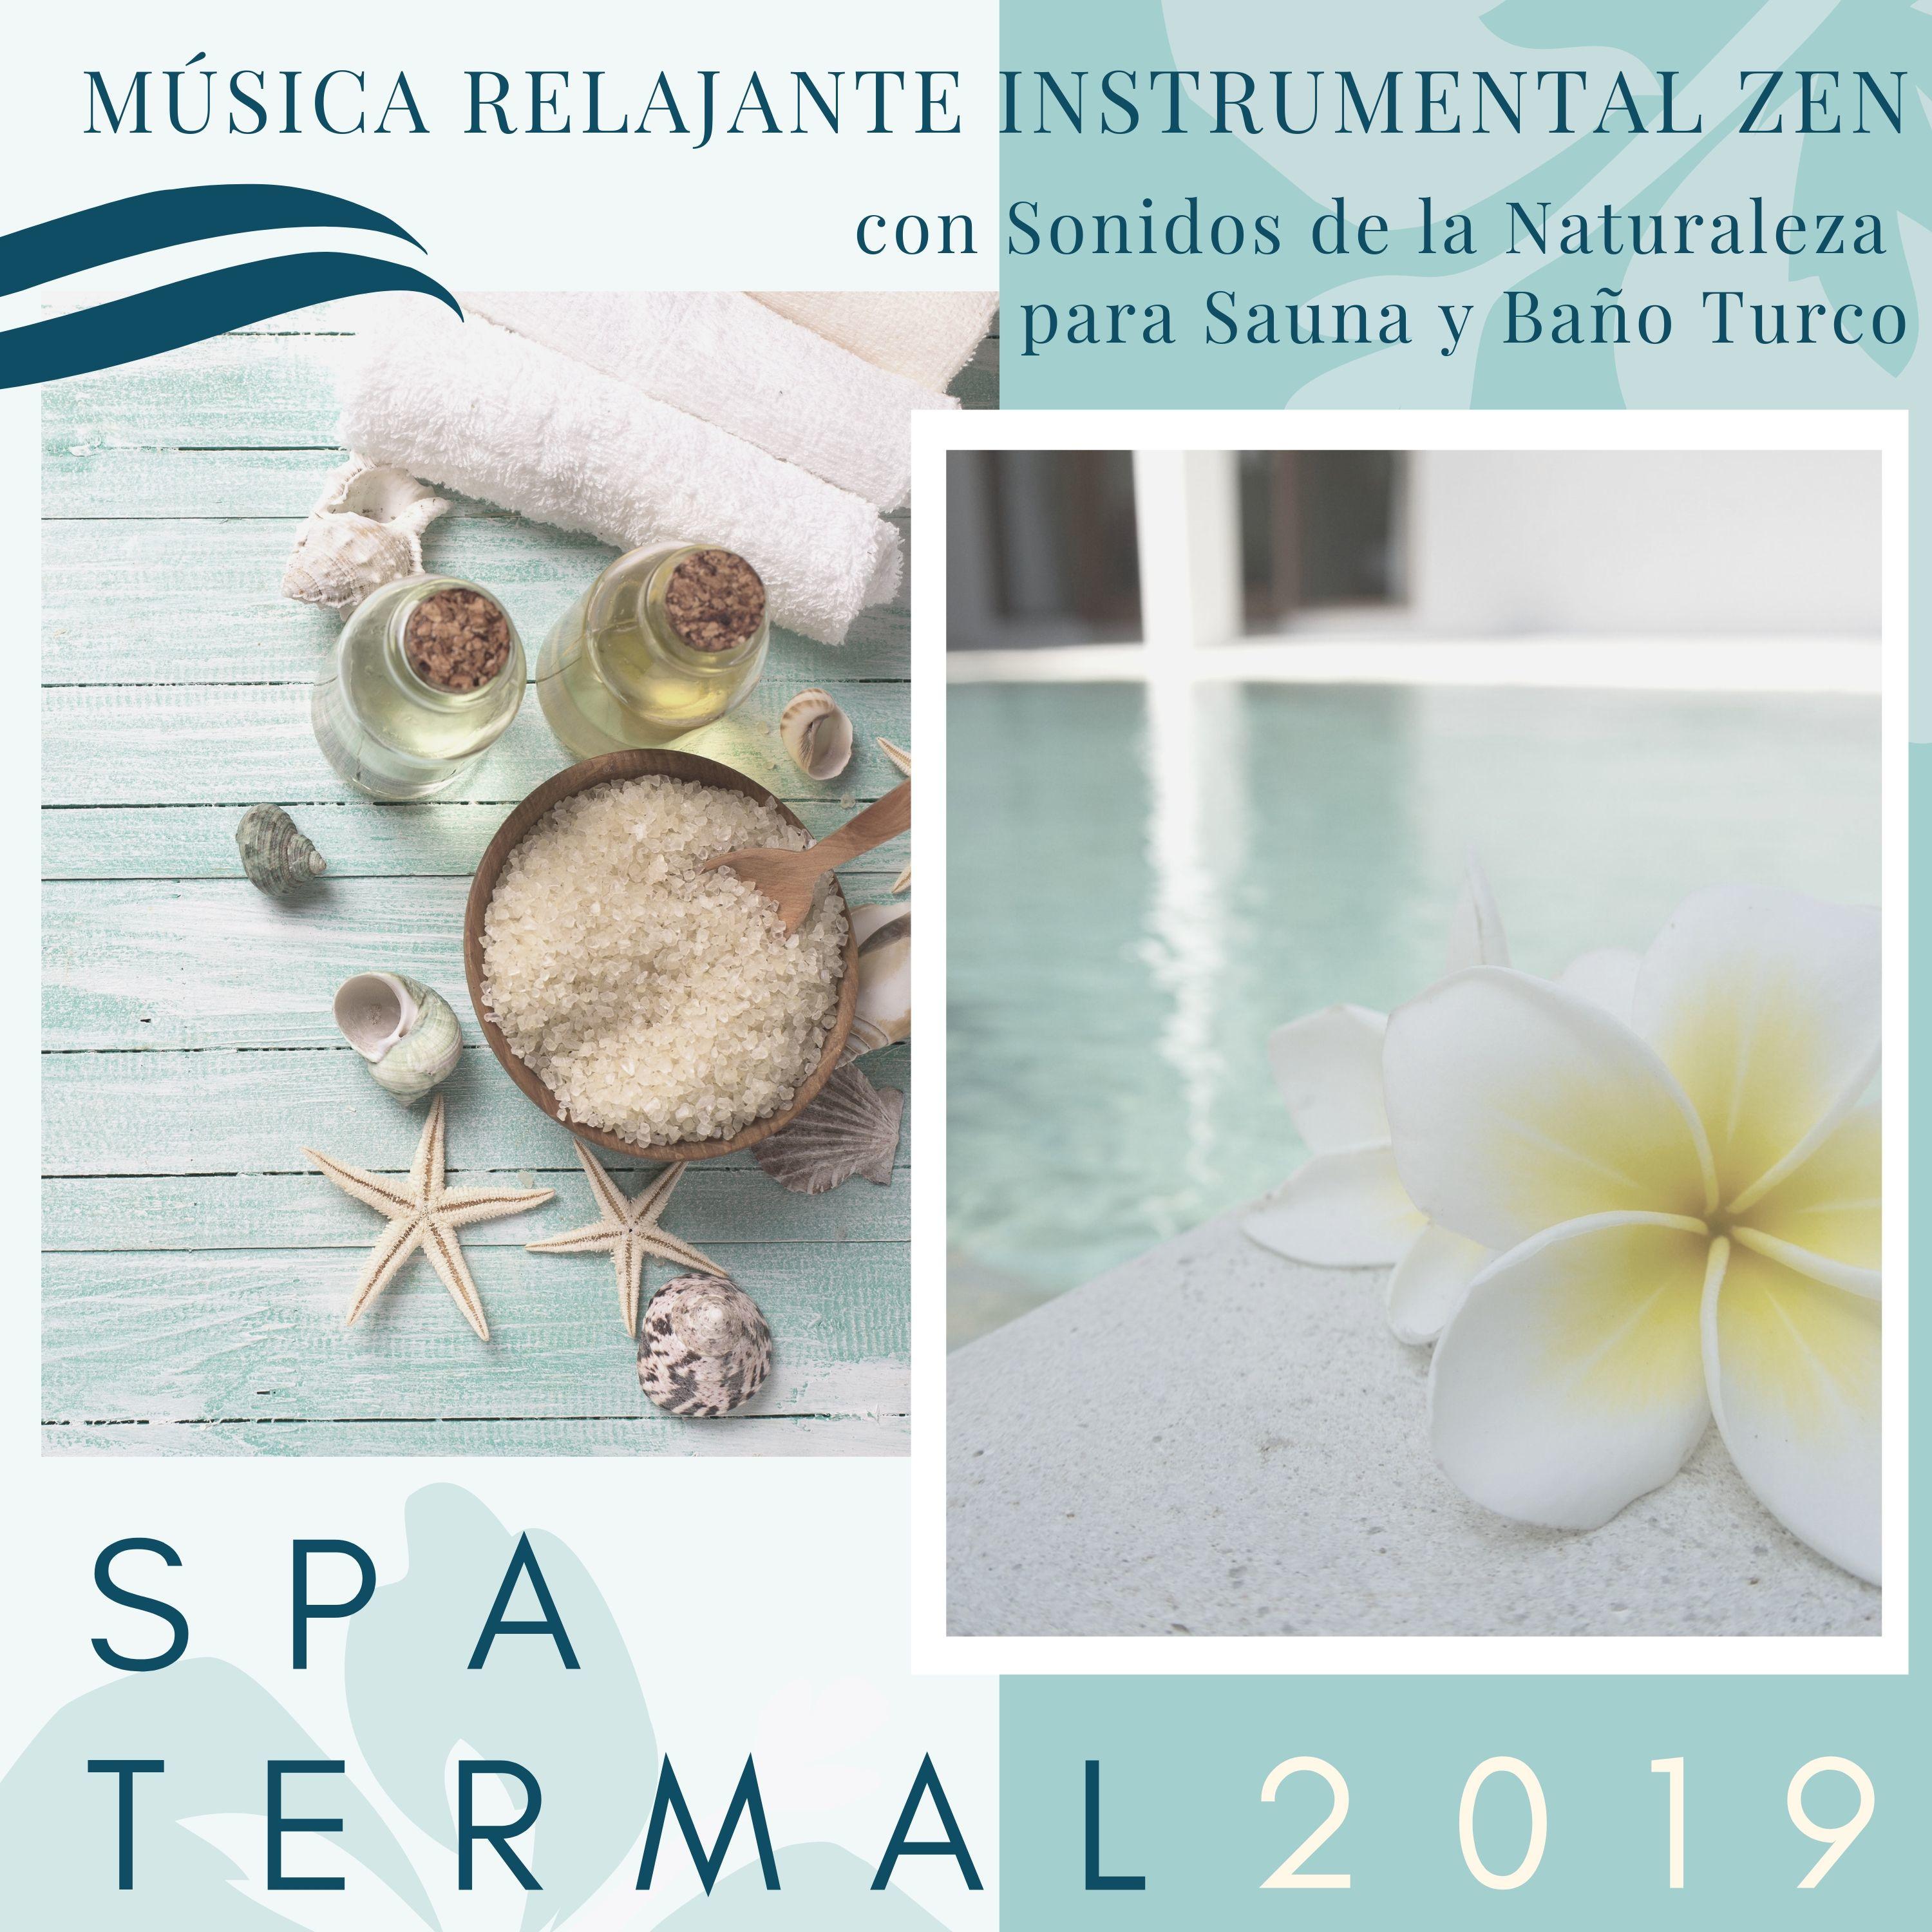 Spa Termal 2019 - Música Relajante Instrumental Zen con Sonidos de la Naturaleza para Sauna y Baño Turco